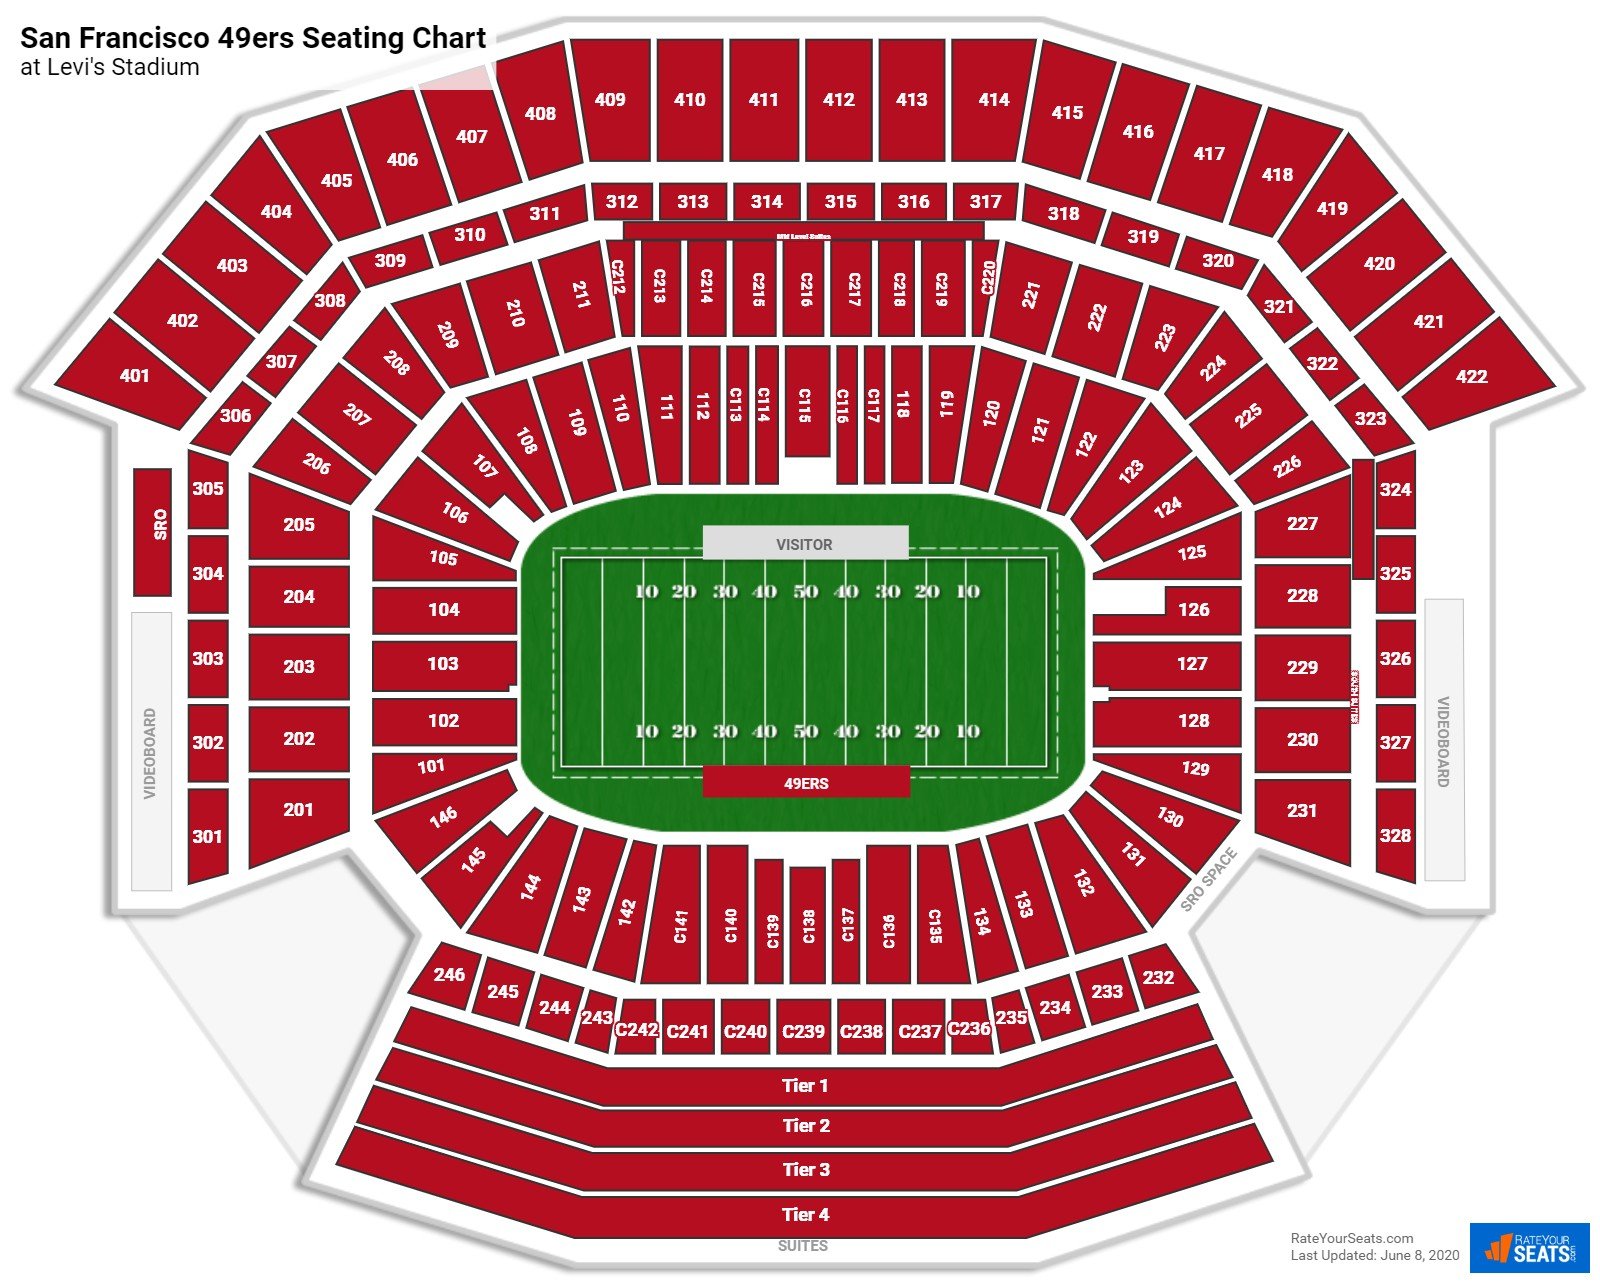 Sun Problem at Levi's Stadium in October? : r/49ers